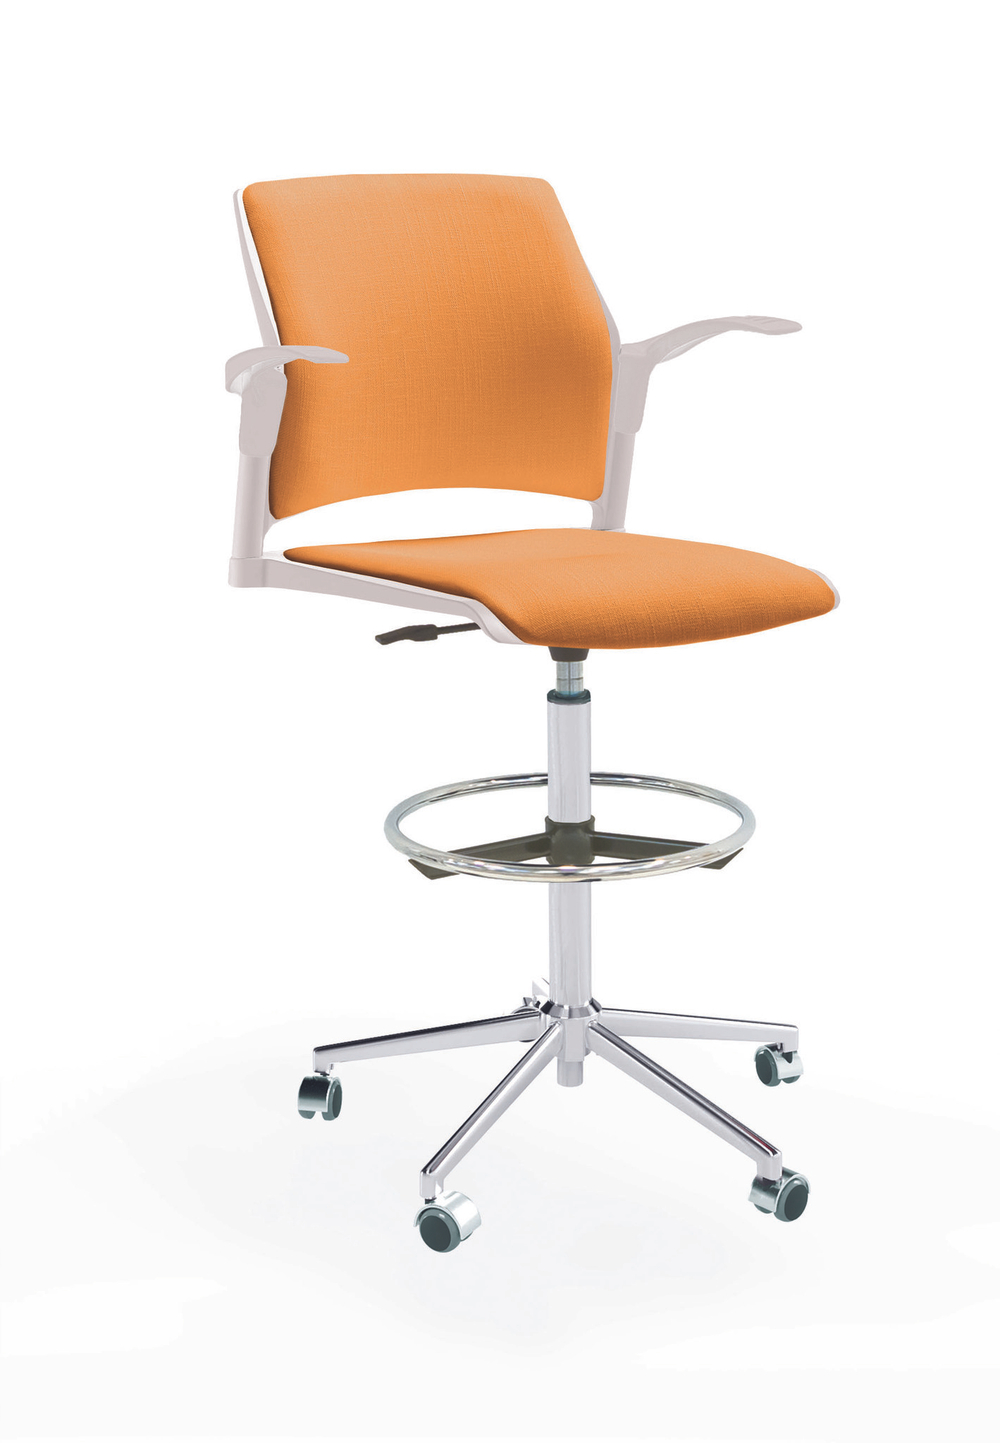 Кресло Rewind каркас хром, пластик белый, база стальная хромированная, с открытыми подлокотниками, сиденье и спинка оранжевые